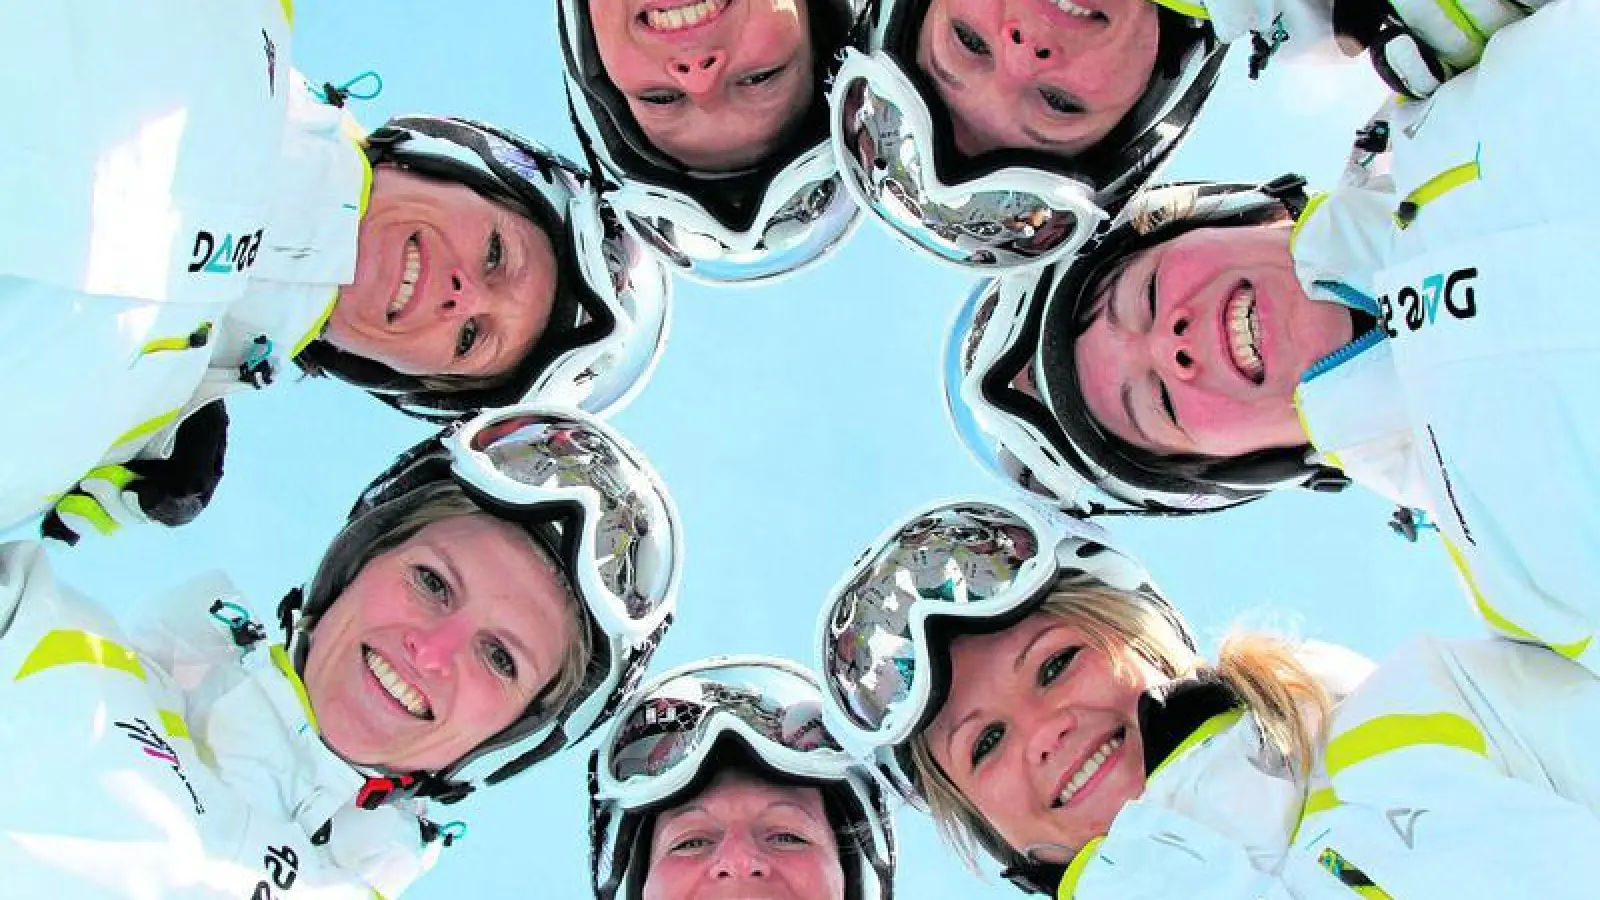 &lt;p&gt; &lt;x_bildunterschr&gt; &lt;b&gt;Gegen eine starke Konkurrenz &lt;/b&gt; kämpfen bei der Weltmeisterschaft in Aspen erstmals zwei deutsche Synchro-Ski-Teams. Darunter das Synchro Team Ladies mit der Ecknacherin Gaby Lerchl (Bildmitte unten).  Fotos: privat &lt;/x_bildunterschr&gt; &lt;/p&gt;